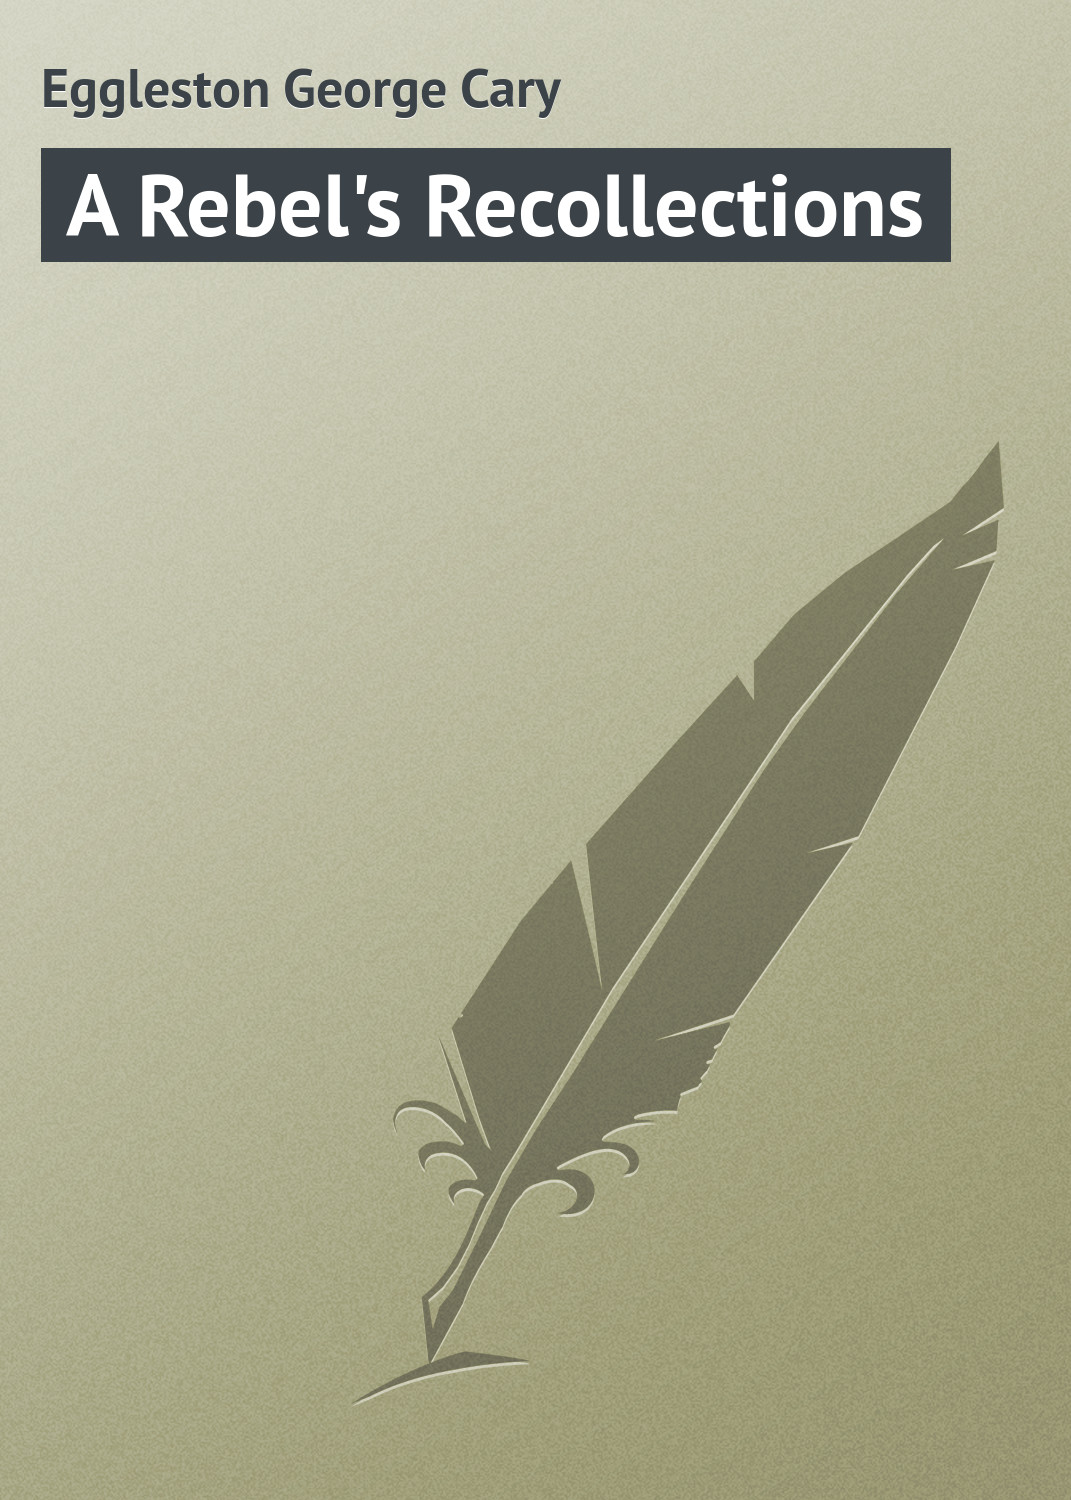 Книга A Rebel's Recollections из серии , созданная George Eggleston, может относится к жанру Зарубежная классика. Стоимость электронной книги A Rebel's Recollections с идентификатором 23154587 составляет 5.99 руб.